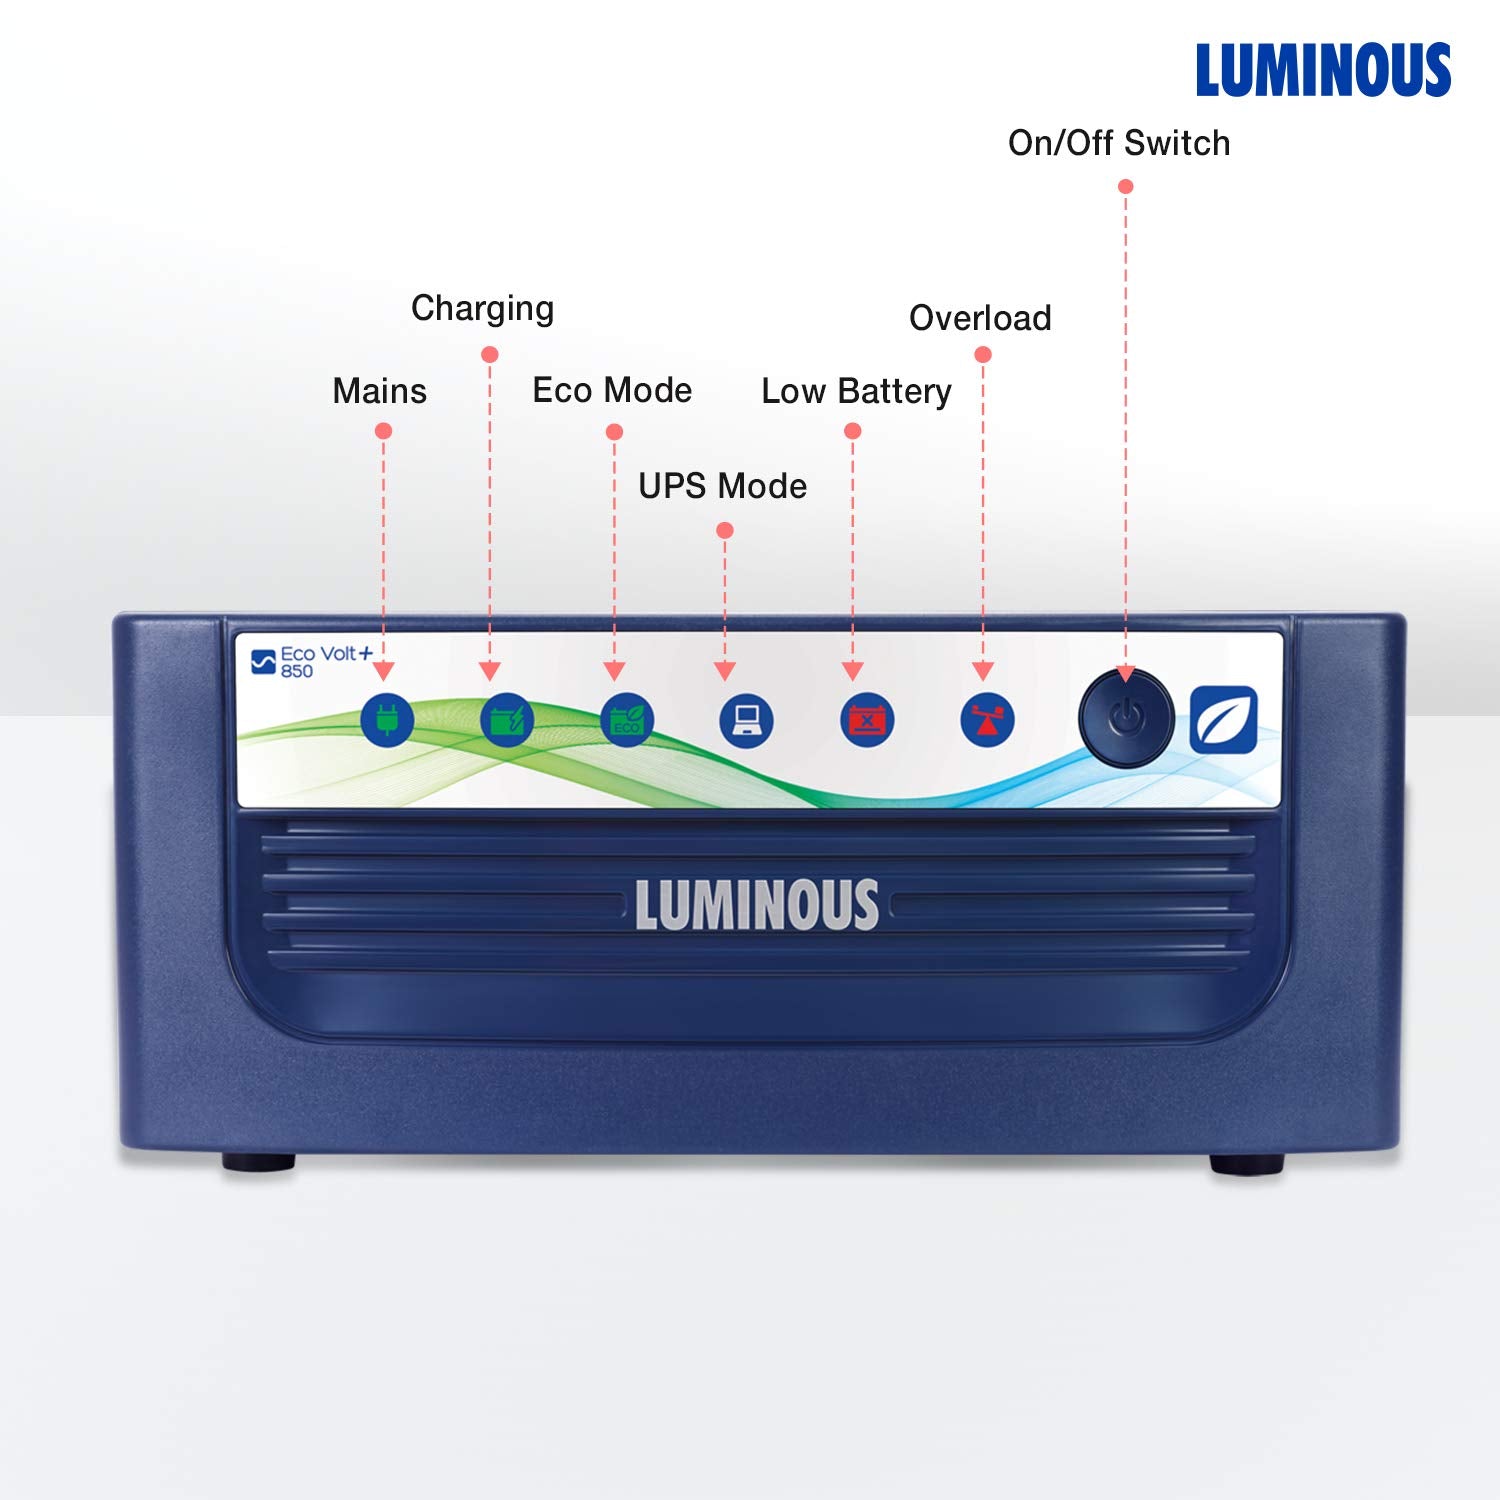 Luminous Eco Volt+ 850 Sine Wave Inverter for Home, Office & Shop